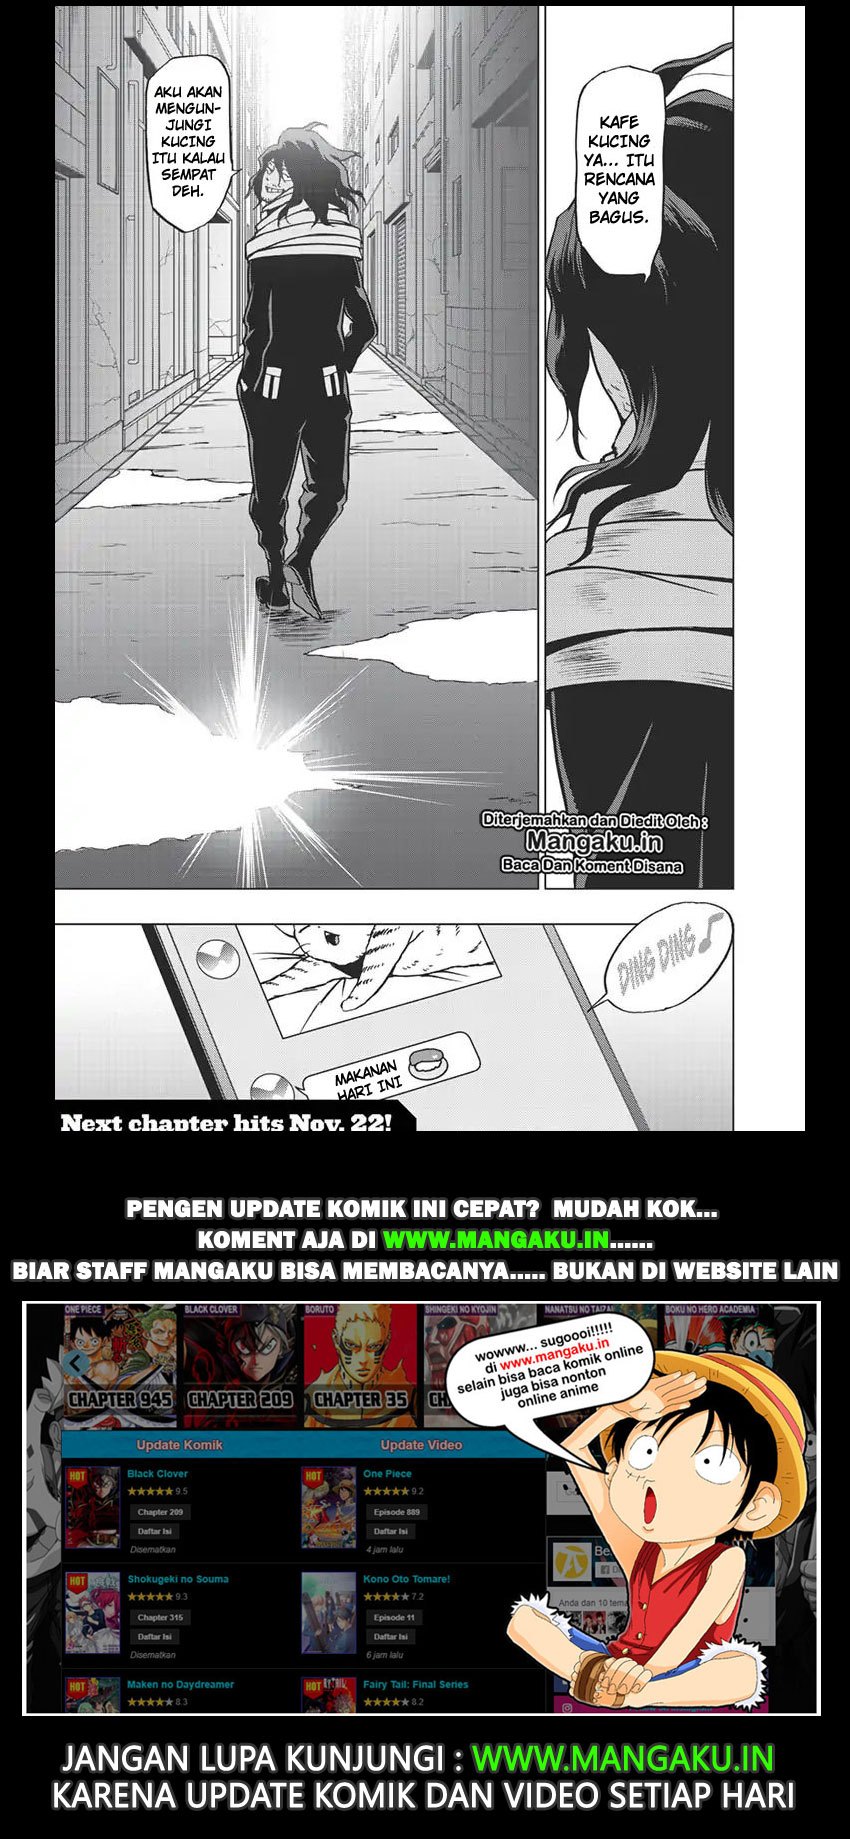 Vigilante: Boku no Hero Academia Illegals Chapter 65